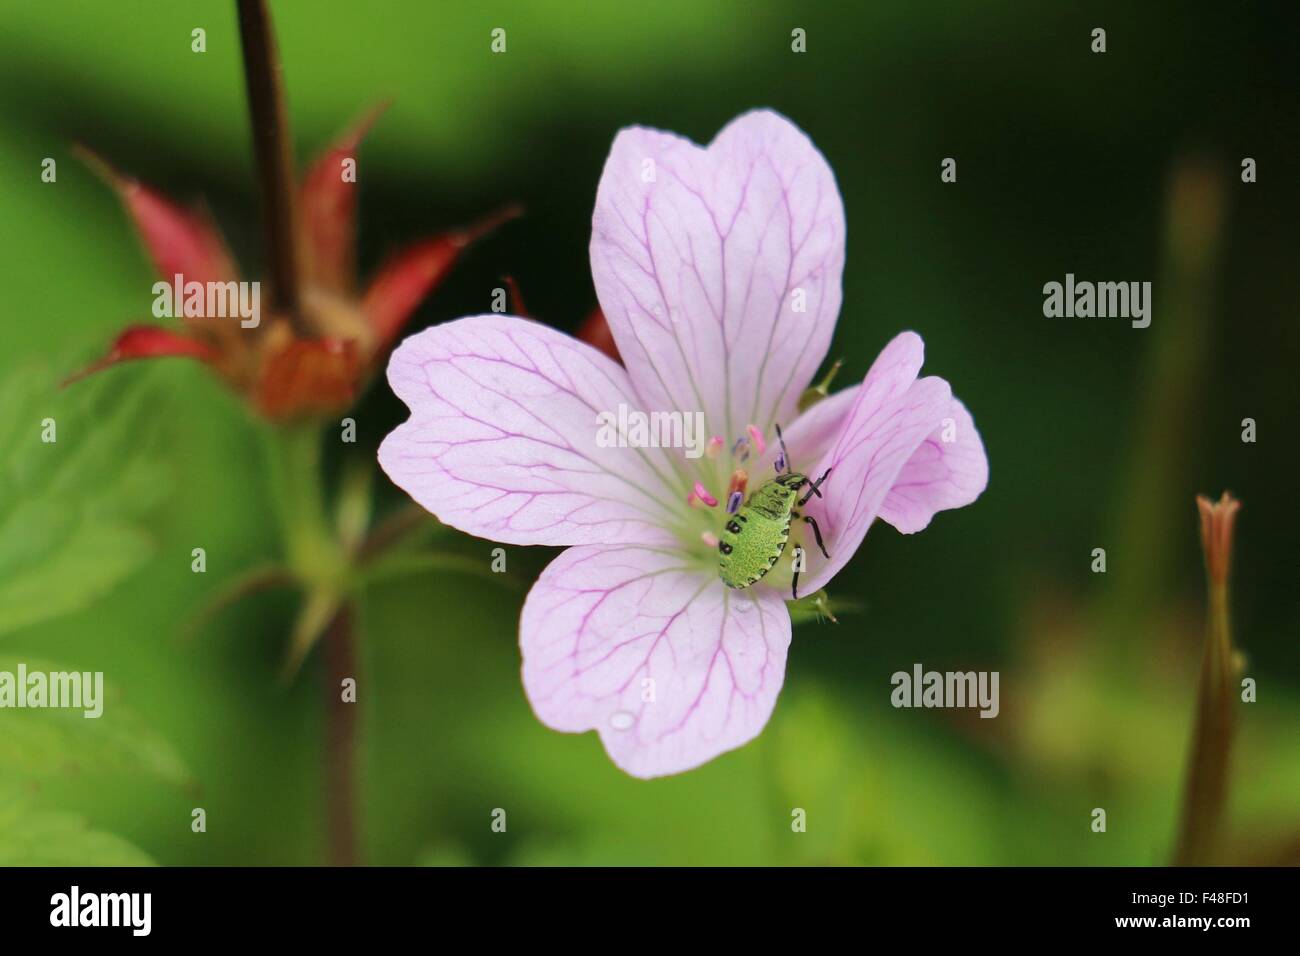 Bright Green Shield Bug Nymphe in rosa Storchschnabel Geranium Blume, Wargrave Pink, close-up auf einem grünen Hintergrund. Stockfoto